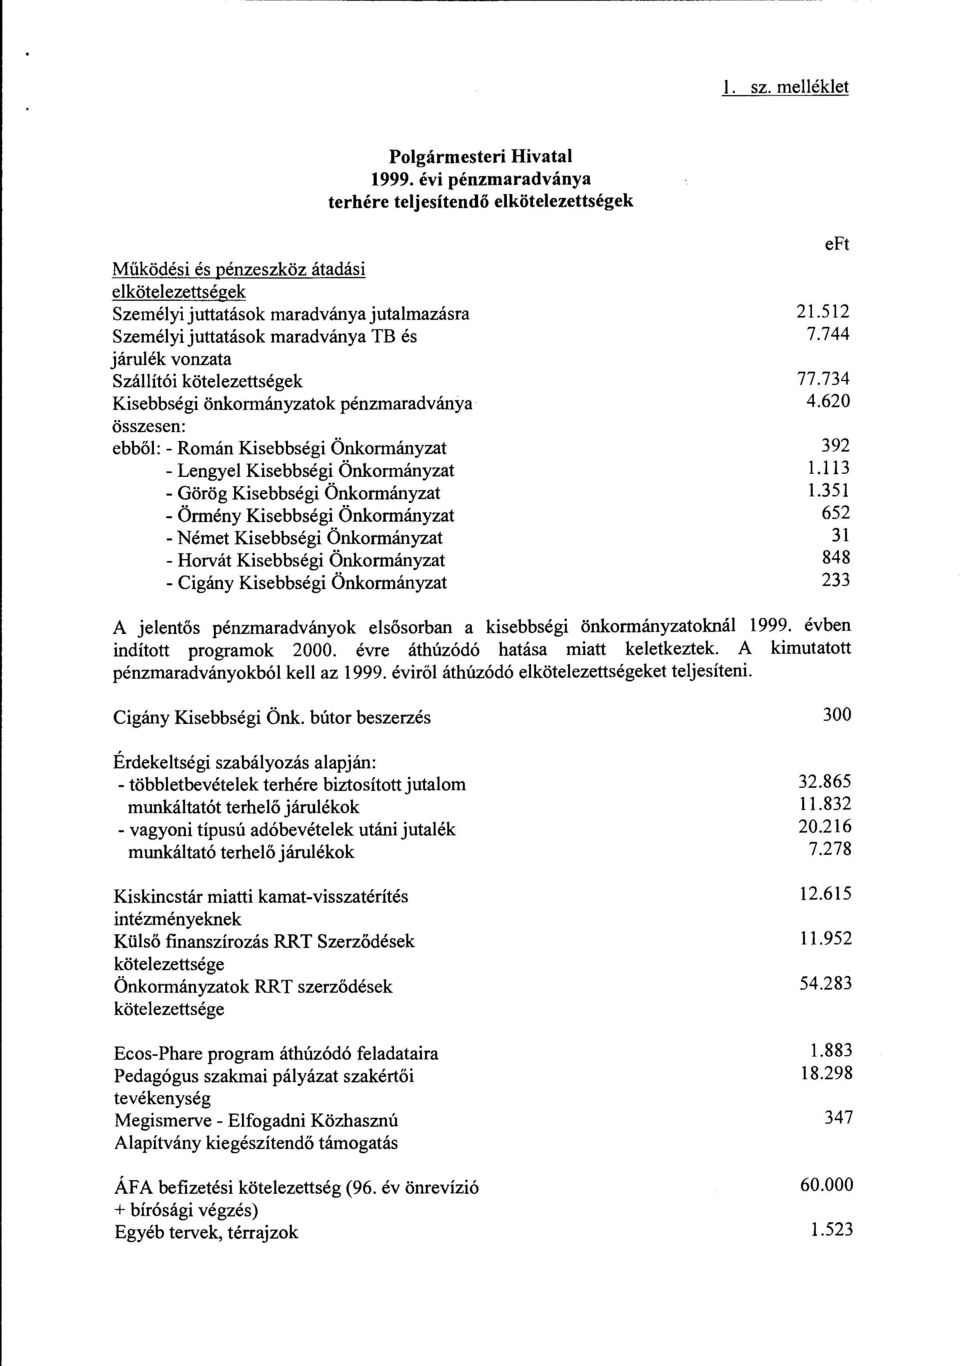 vonzata Szállítói kötelezettségek Kisebbségi önkormányzatok pénzmaradványa összesen: ebből: - Román Kisebbségi Önkormányzat - Lengyel Kisebbségi Önkormányzat - Görög Kisebbségi Önkormányzat - Örmény